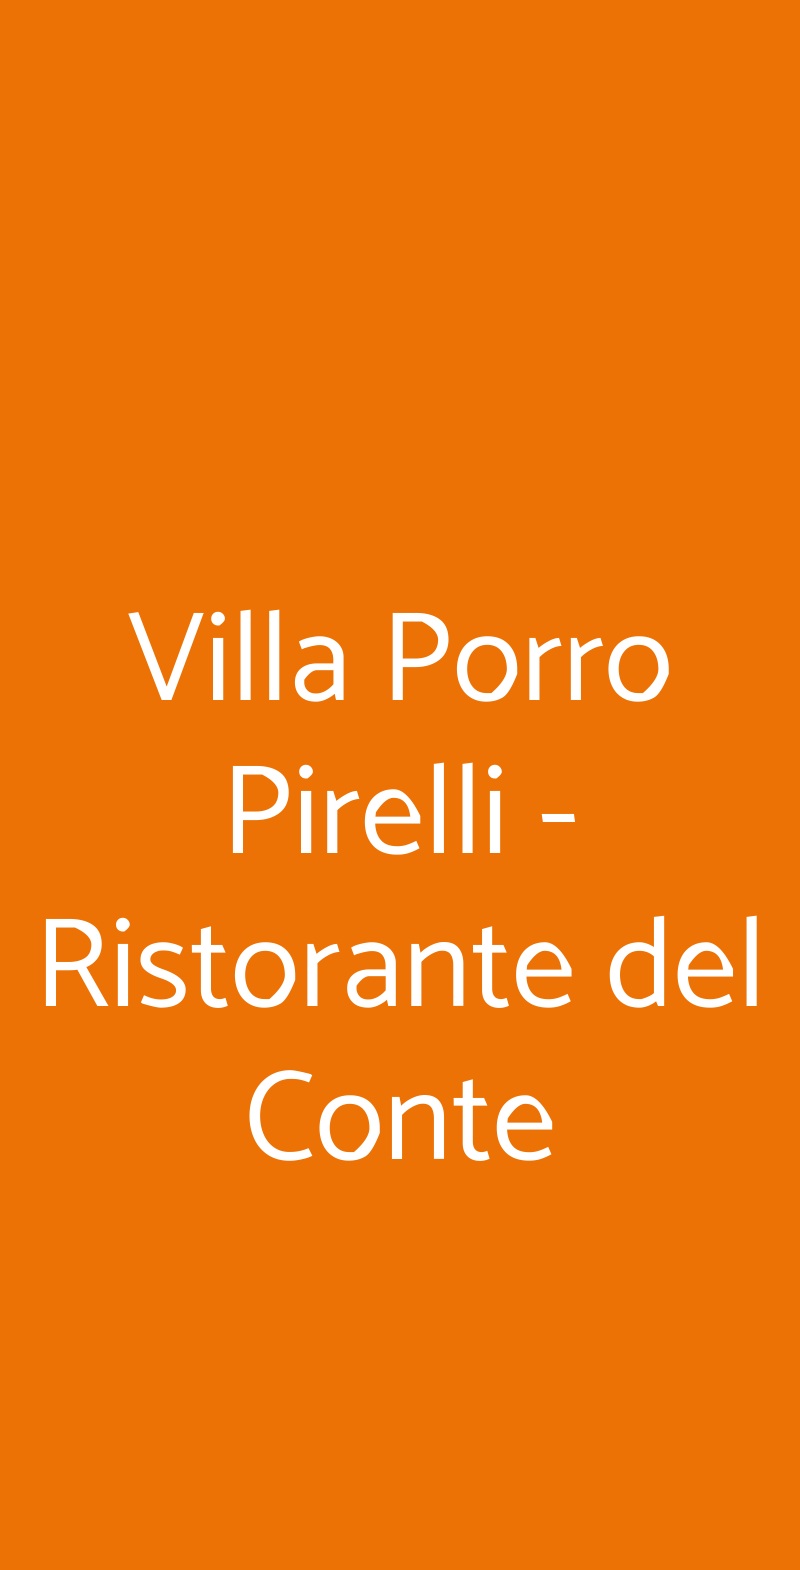 Villa Porro Pirelli - Ristorante del Conte Induno Olona menù 1 pagina